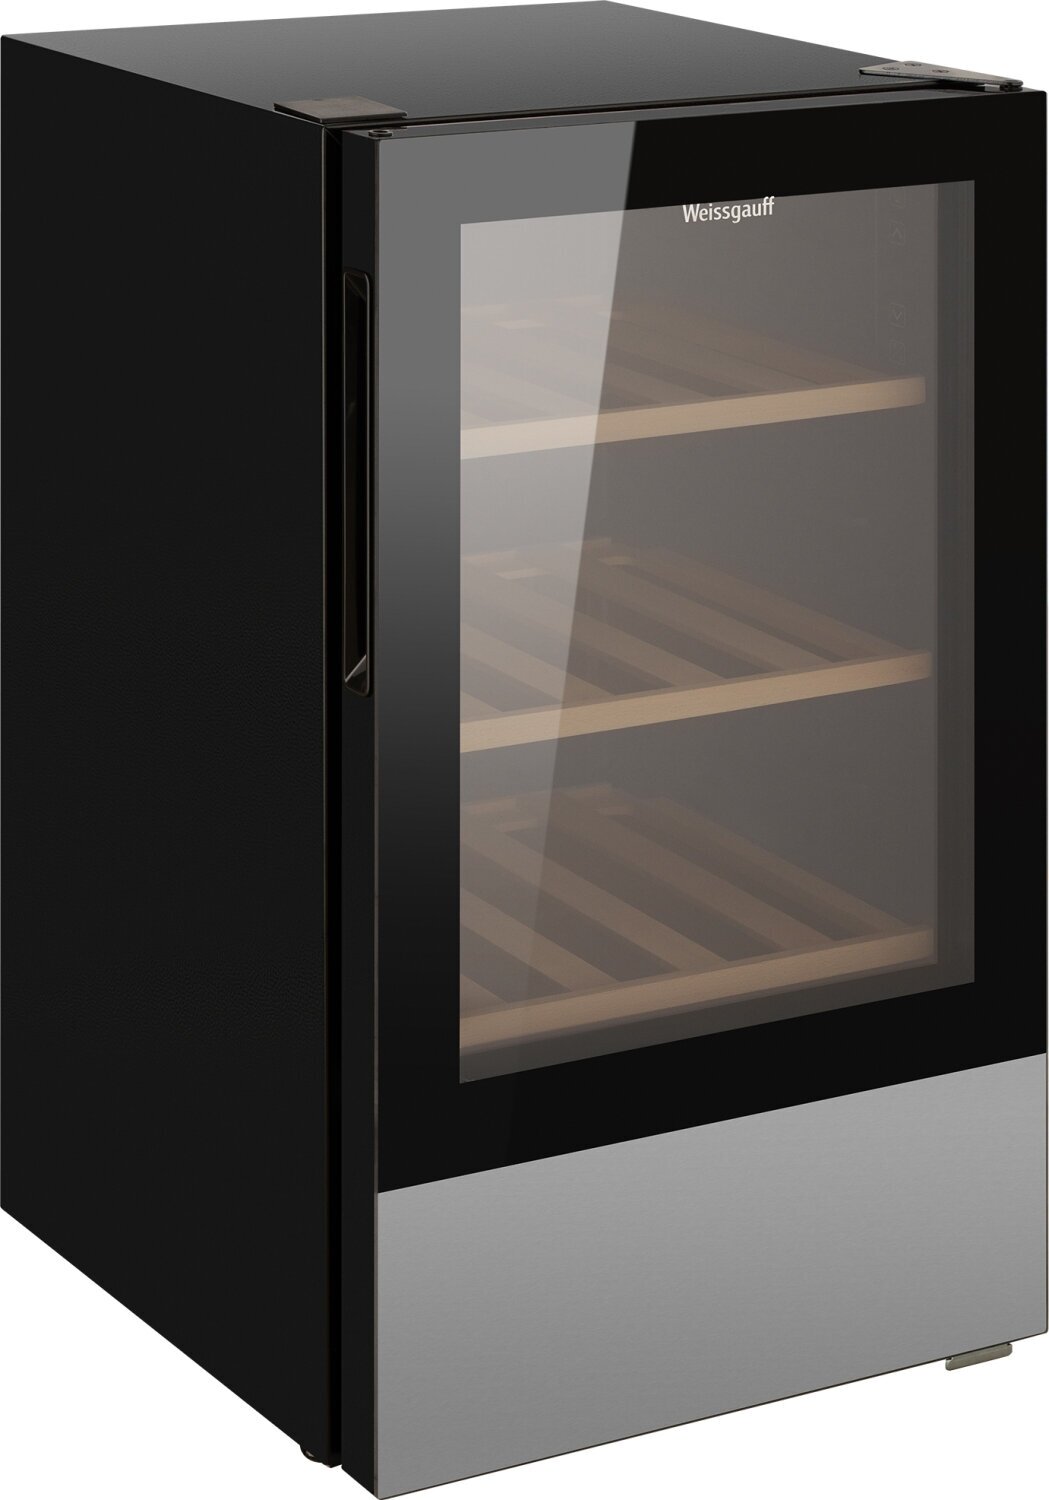 Винный холодильник Weissgauff WWC-30 Bottle 3 года гарантии, вместимость 30 бутылок, перенавешиваемая дверь, диапазон температур 5-20°С